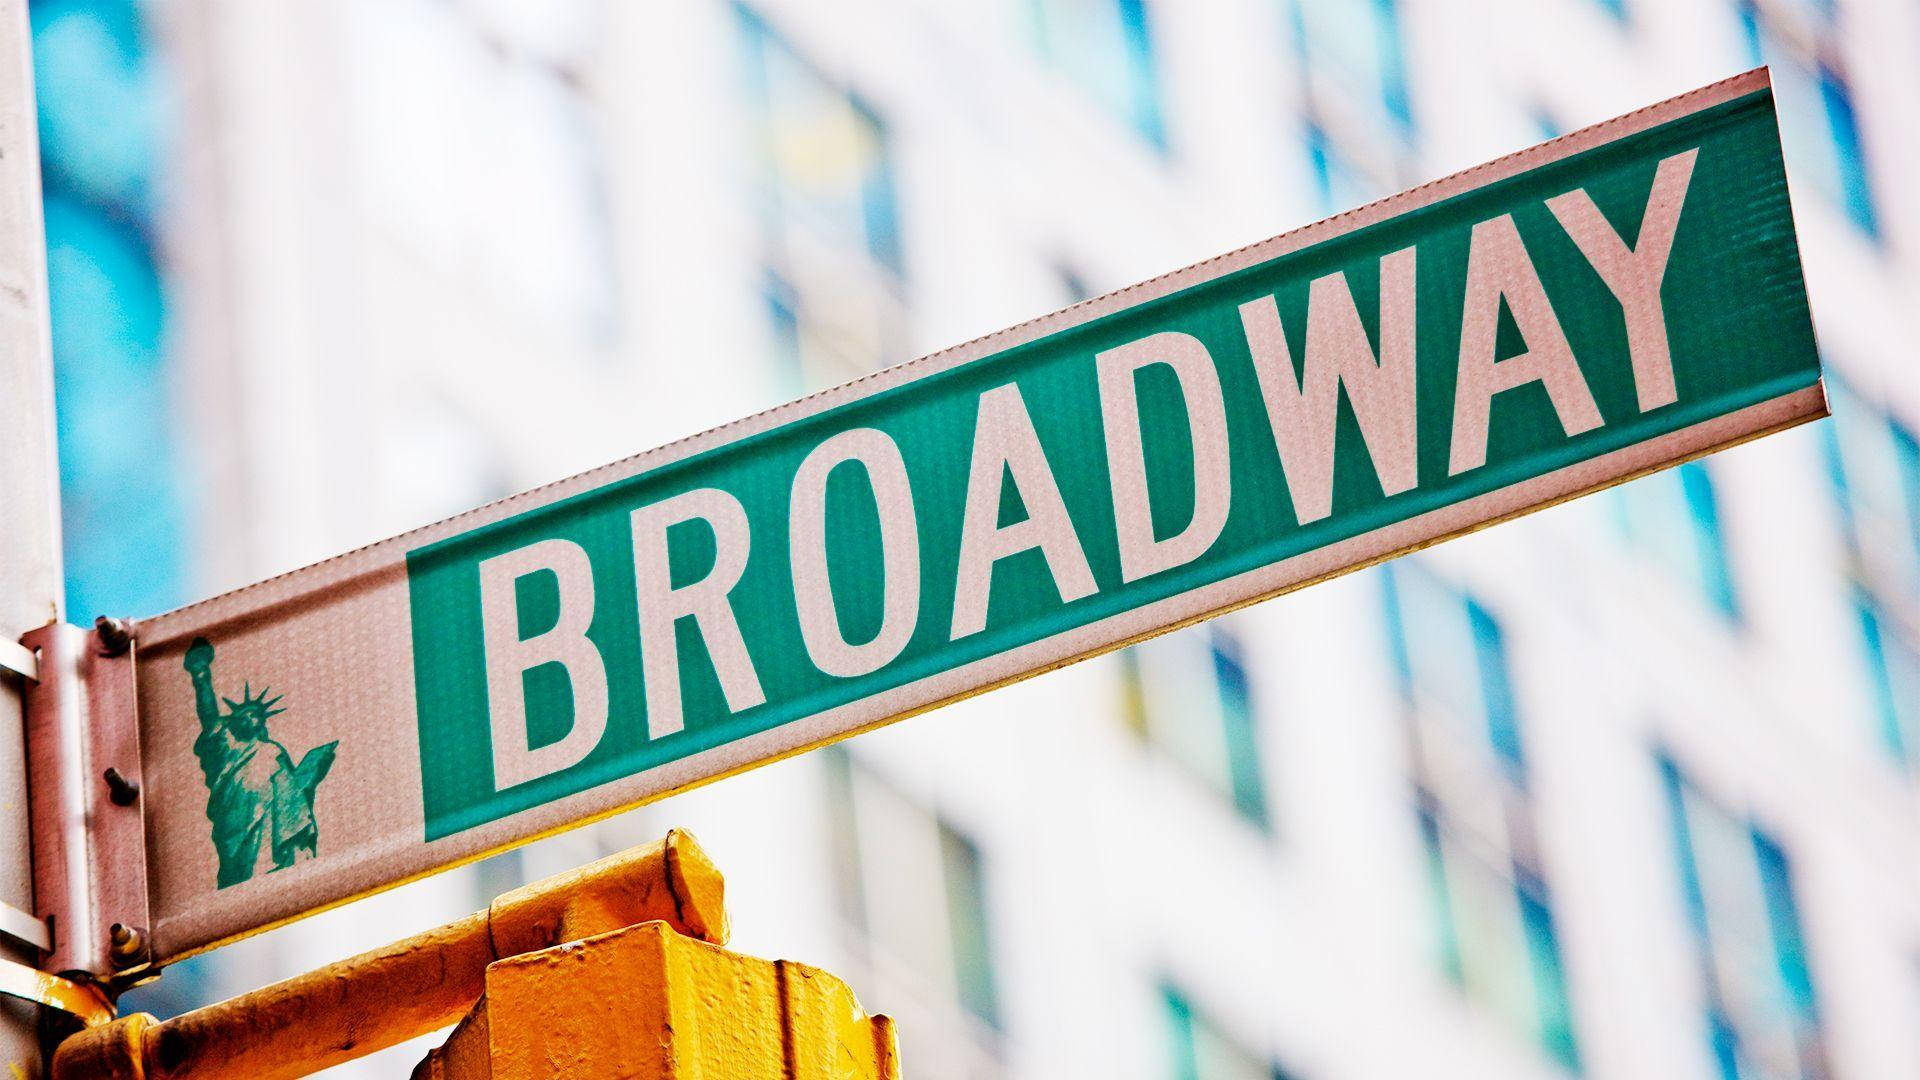 Broadway-billeder